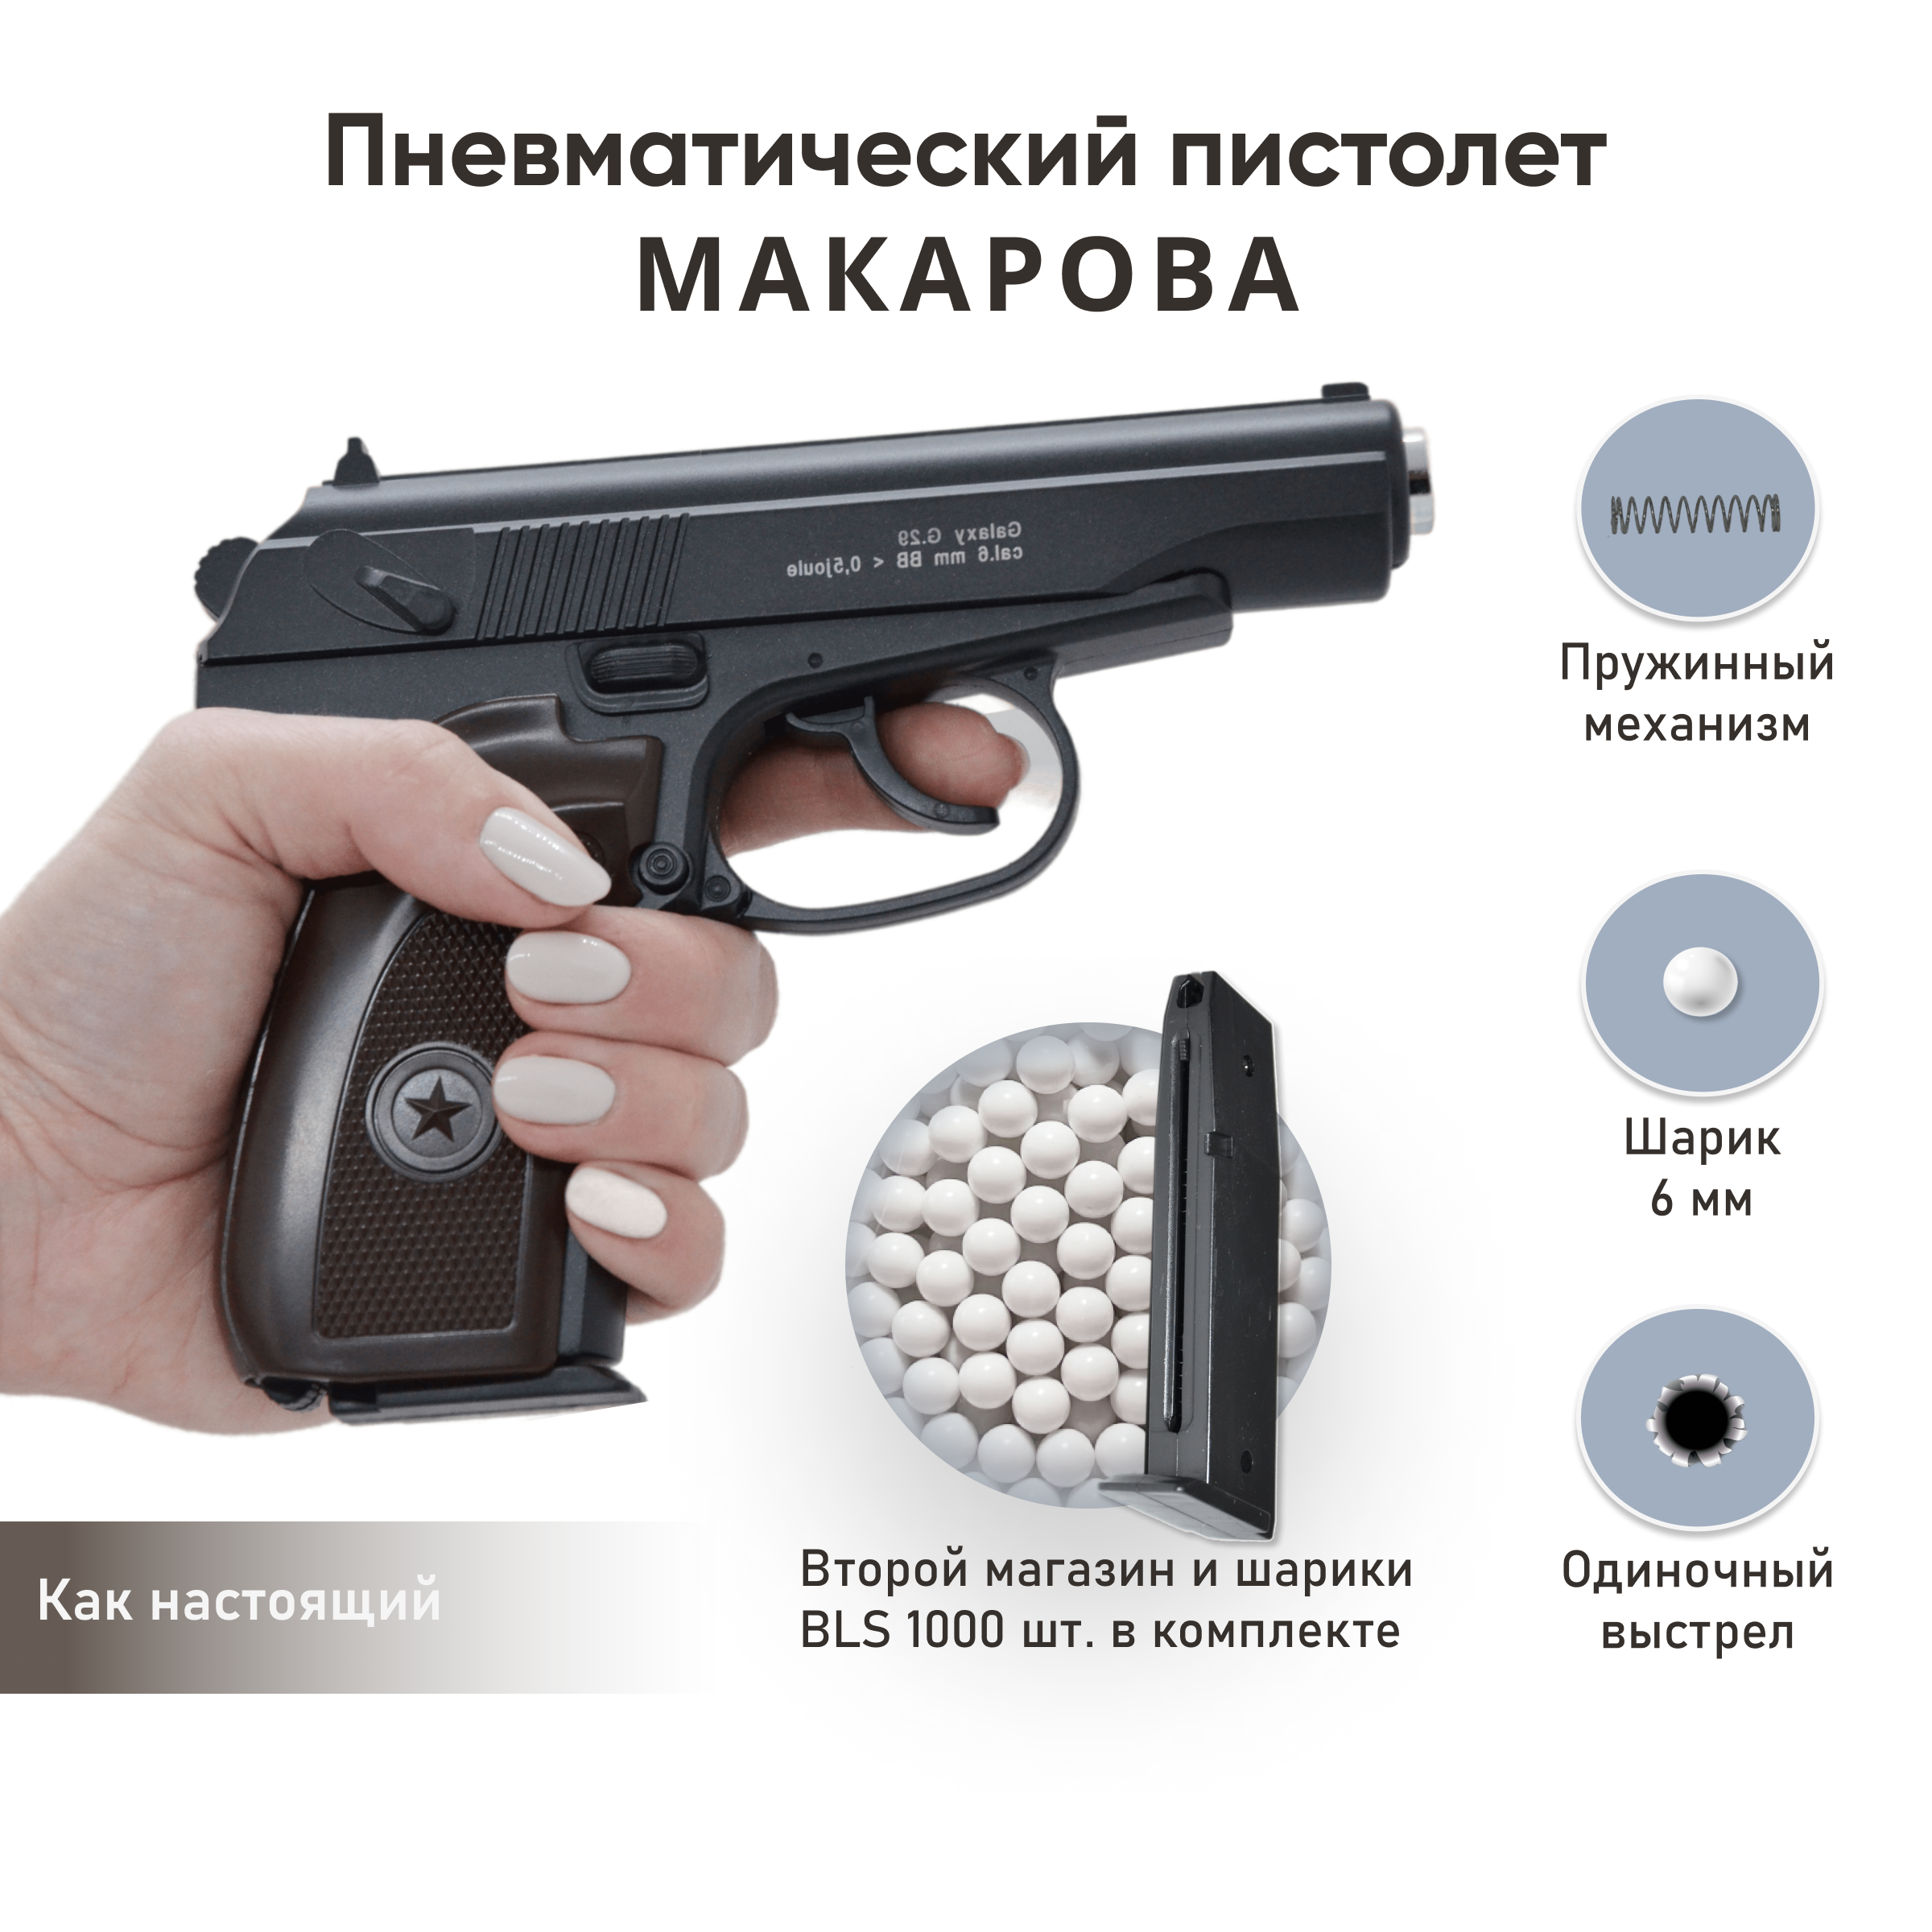 Пистолет Galaxy Макарова второй магазин и шарики 1000 шт. - фото 2